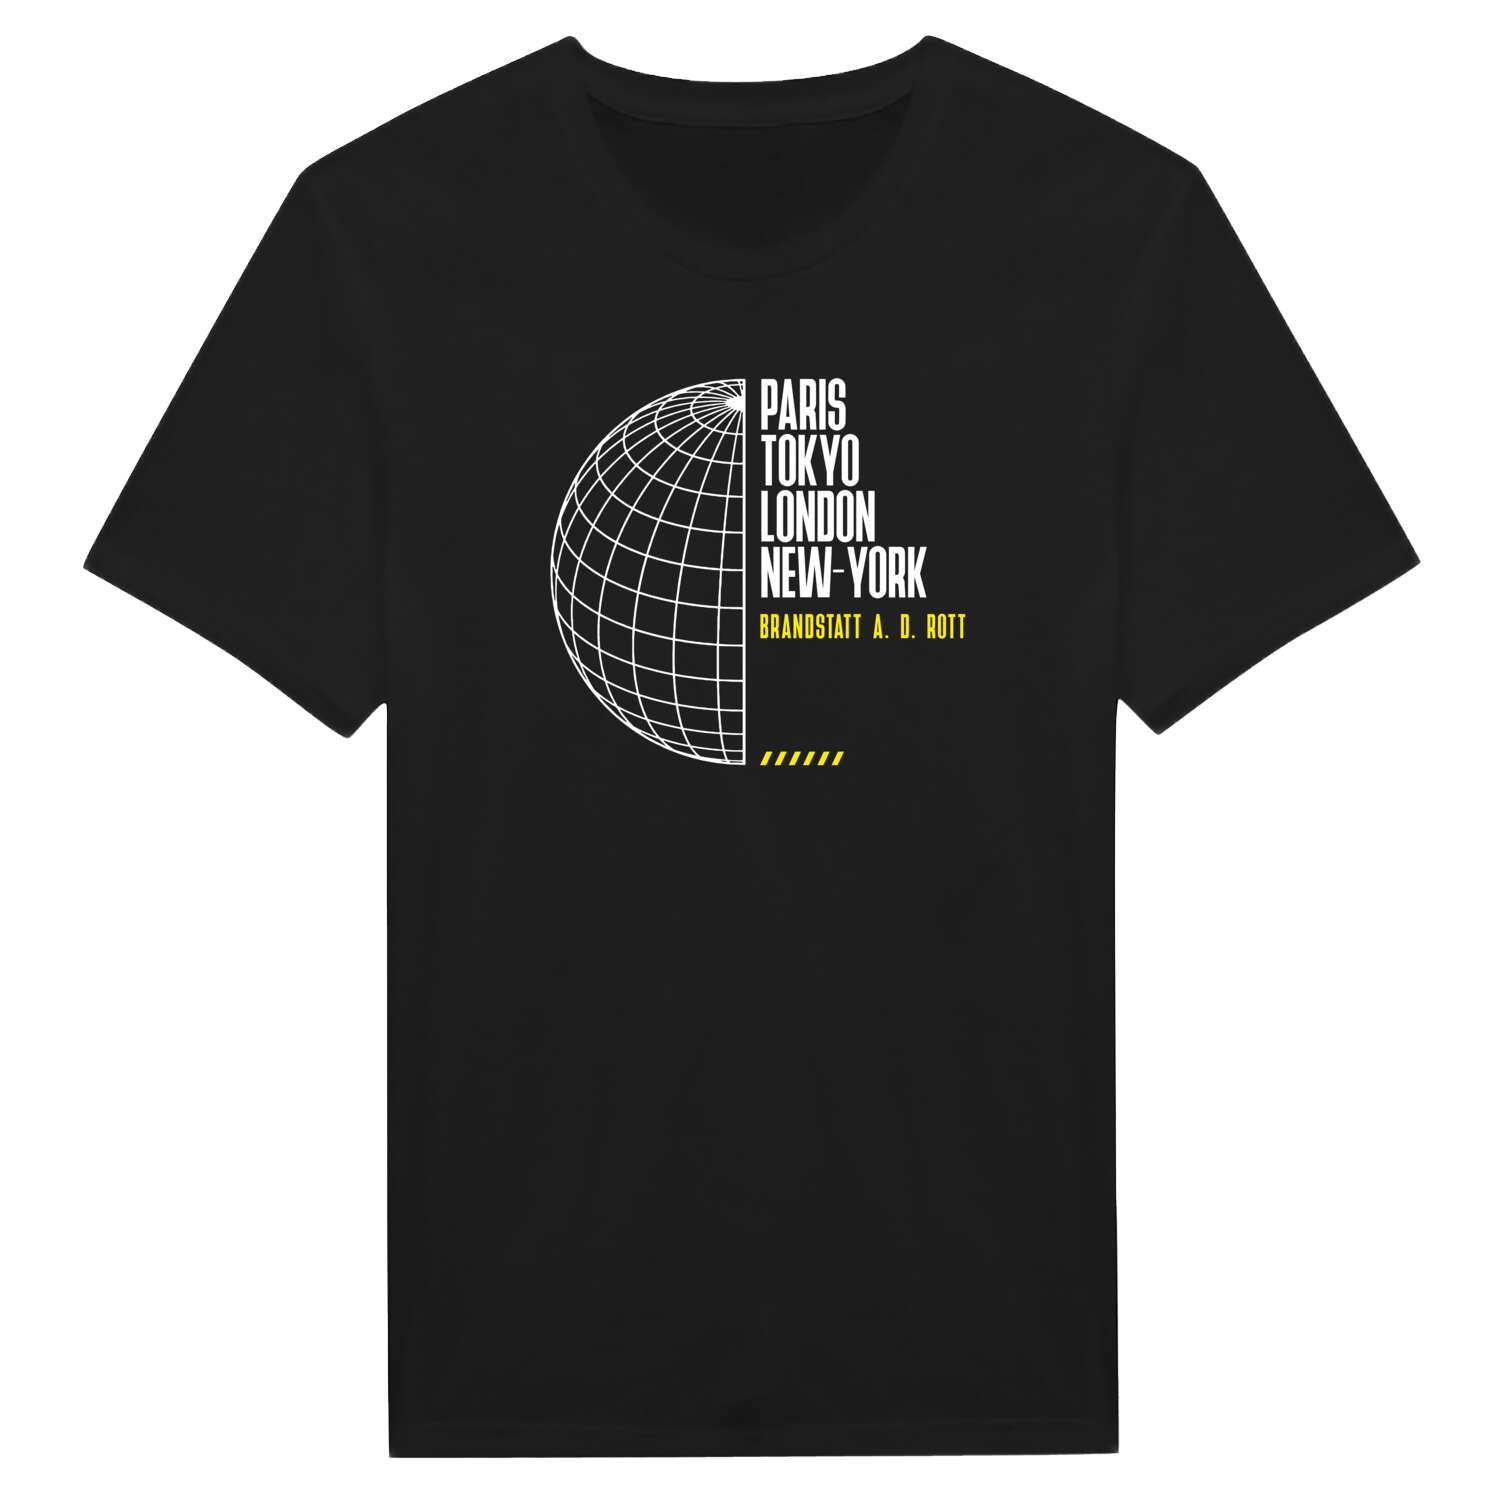 Brandstatt a. d. Rott T-Shirt »Paris Tokyo London«